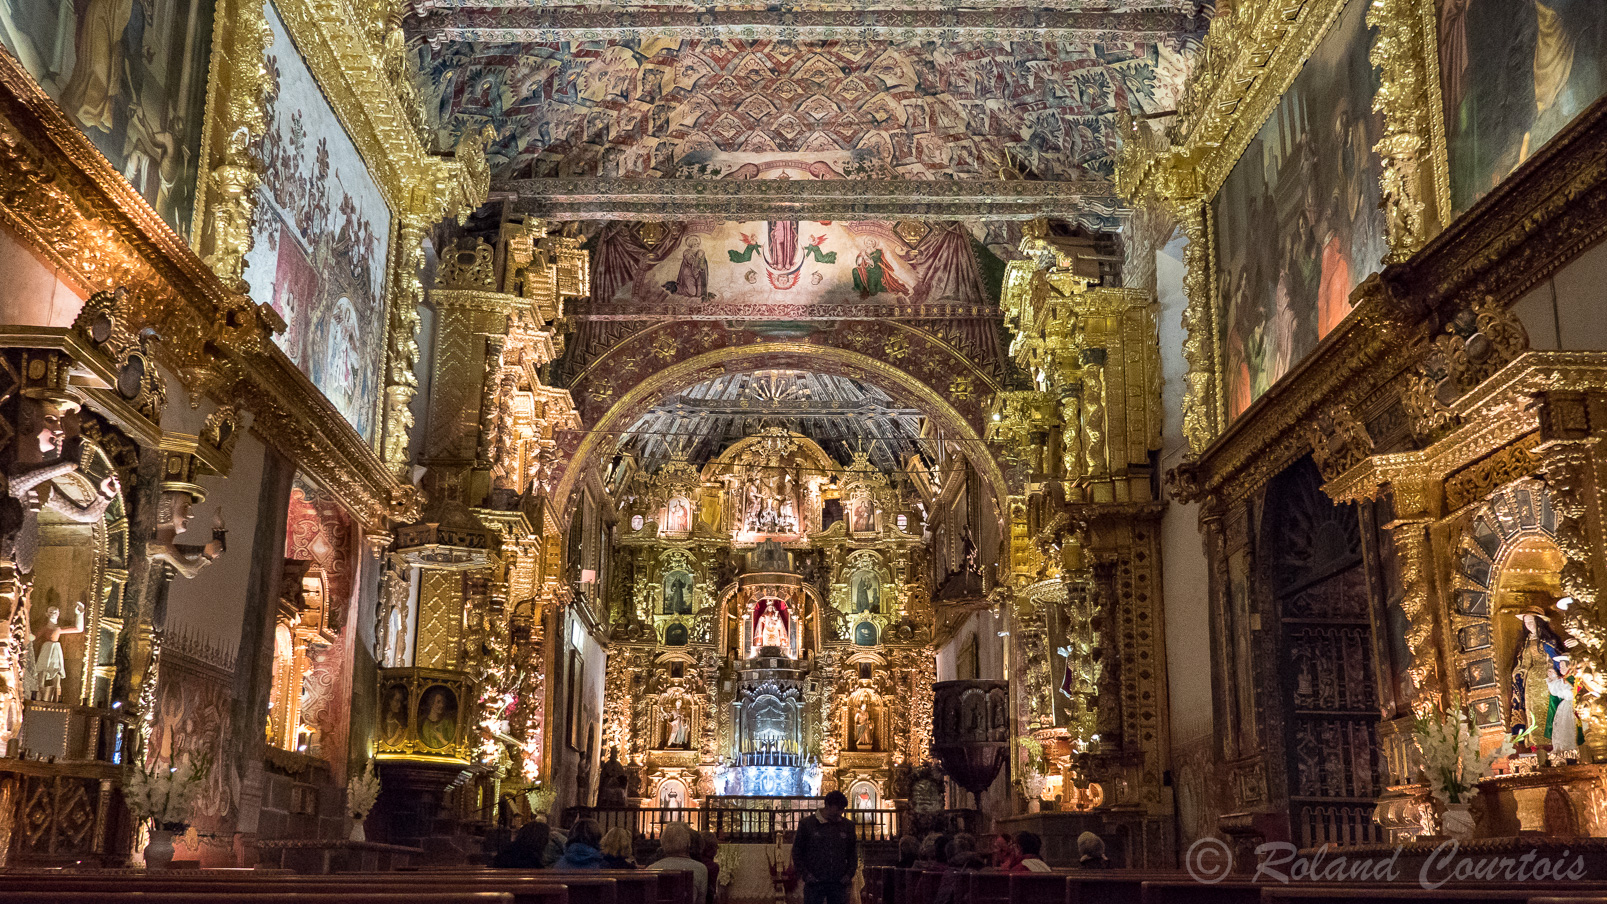 Halte au petit village d'Andahuaylillas. Cette église est l'un des exemples les plus beaux et les plus surprenants de l'art religieux populaire andin et une formidable démonstration de l'art baroque.